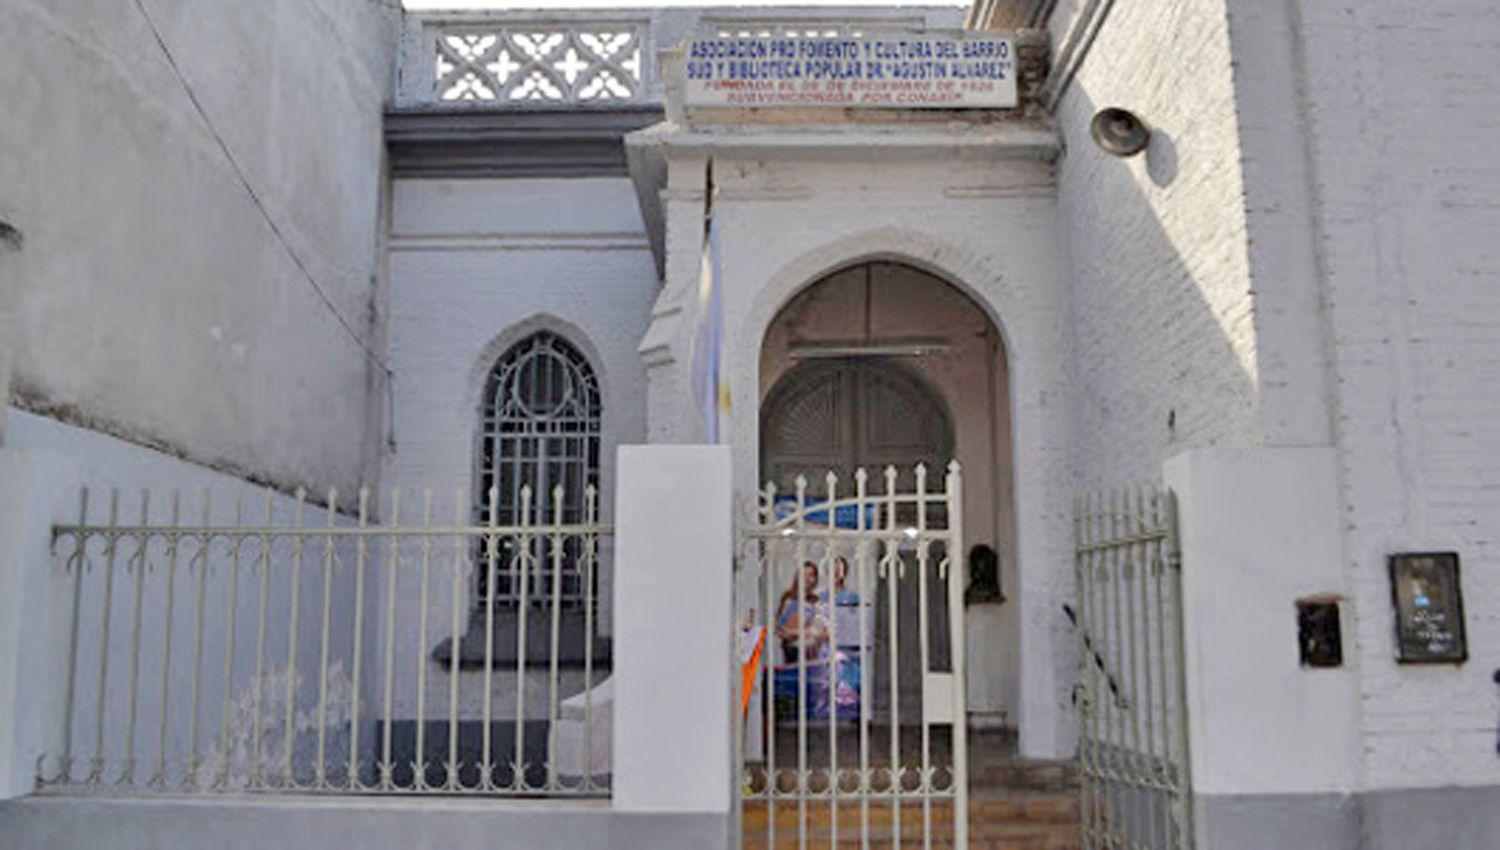 La biblioteca popular Agustín Álvarez est� ubicada en
calle Independencia N� 652 de la ciudad Capital